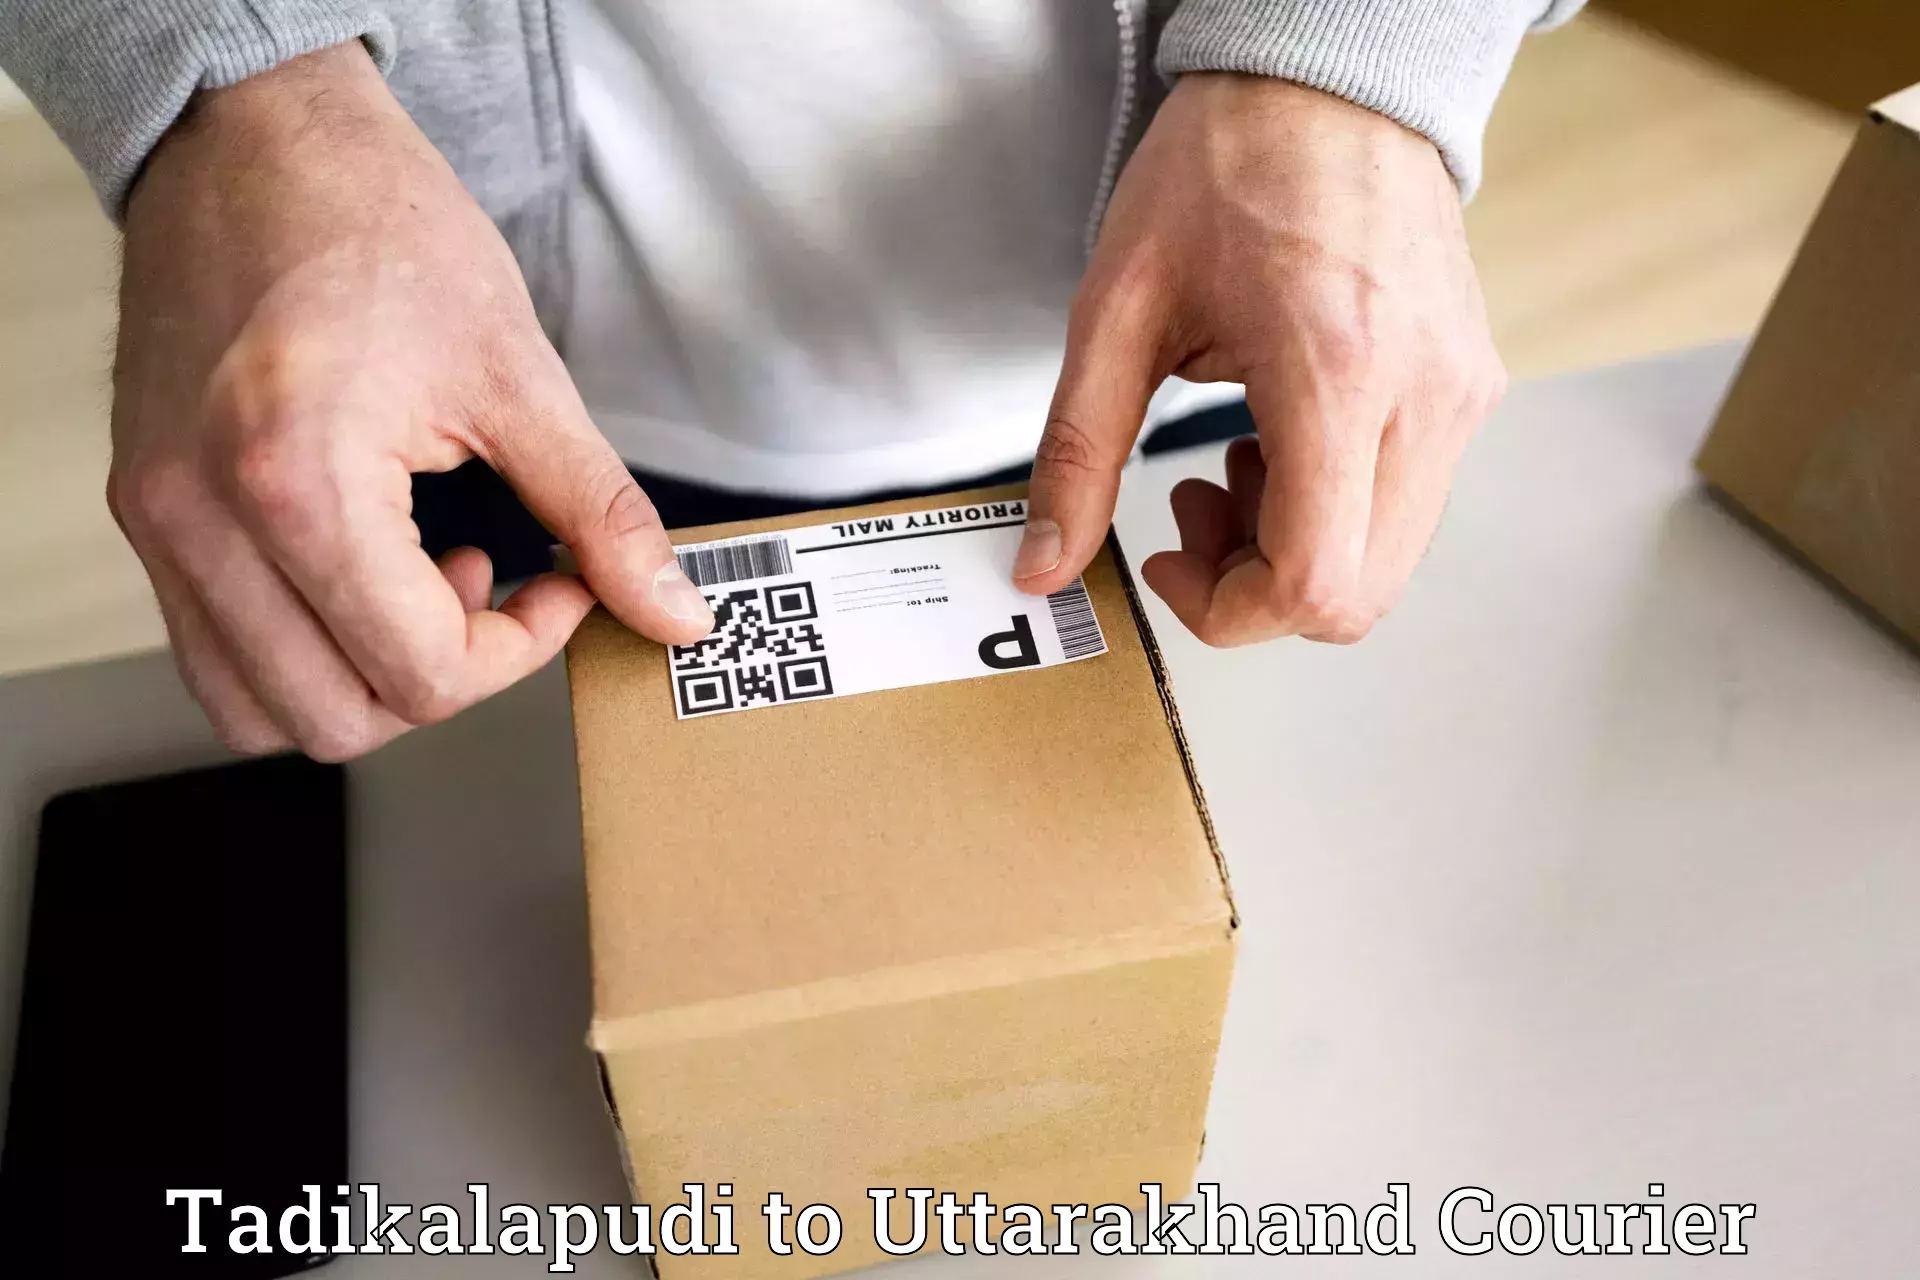 Customized delivery options Tadikalapudi to Bageshwar